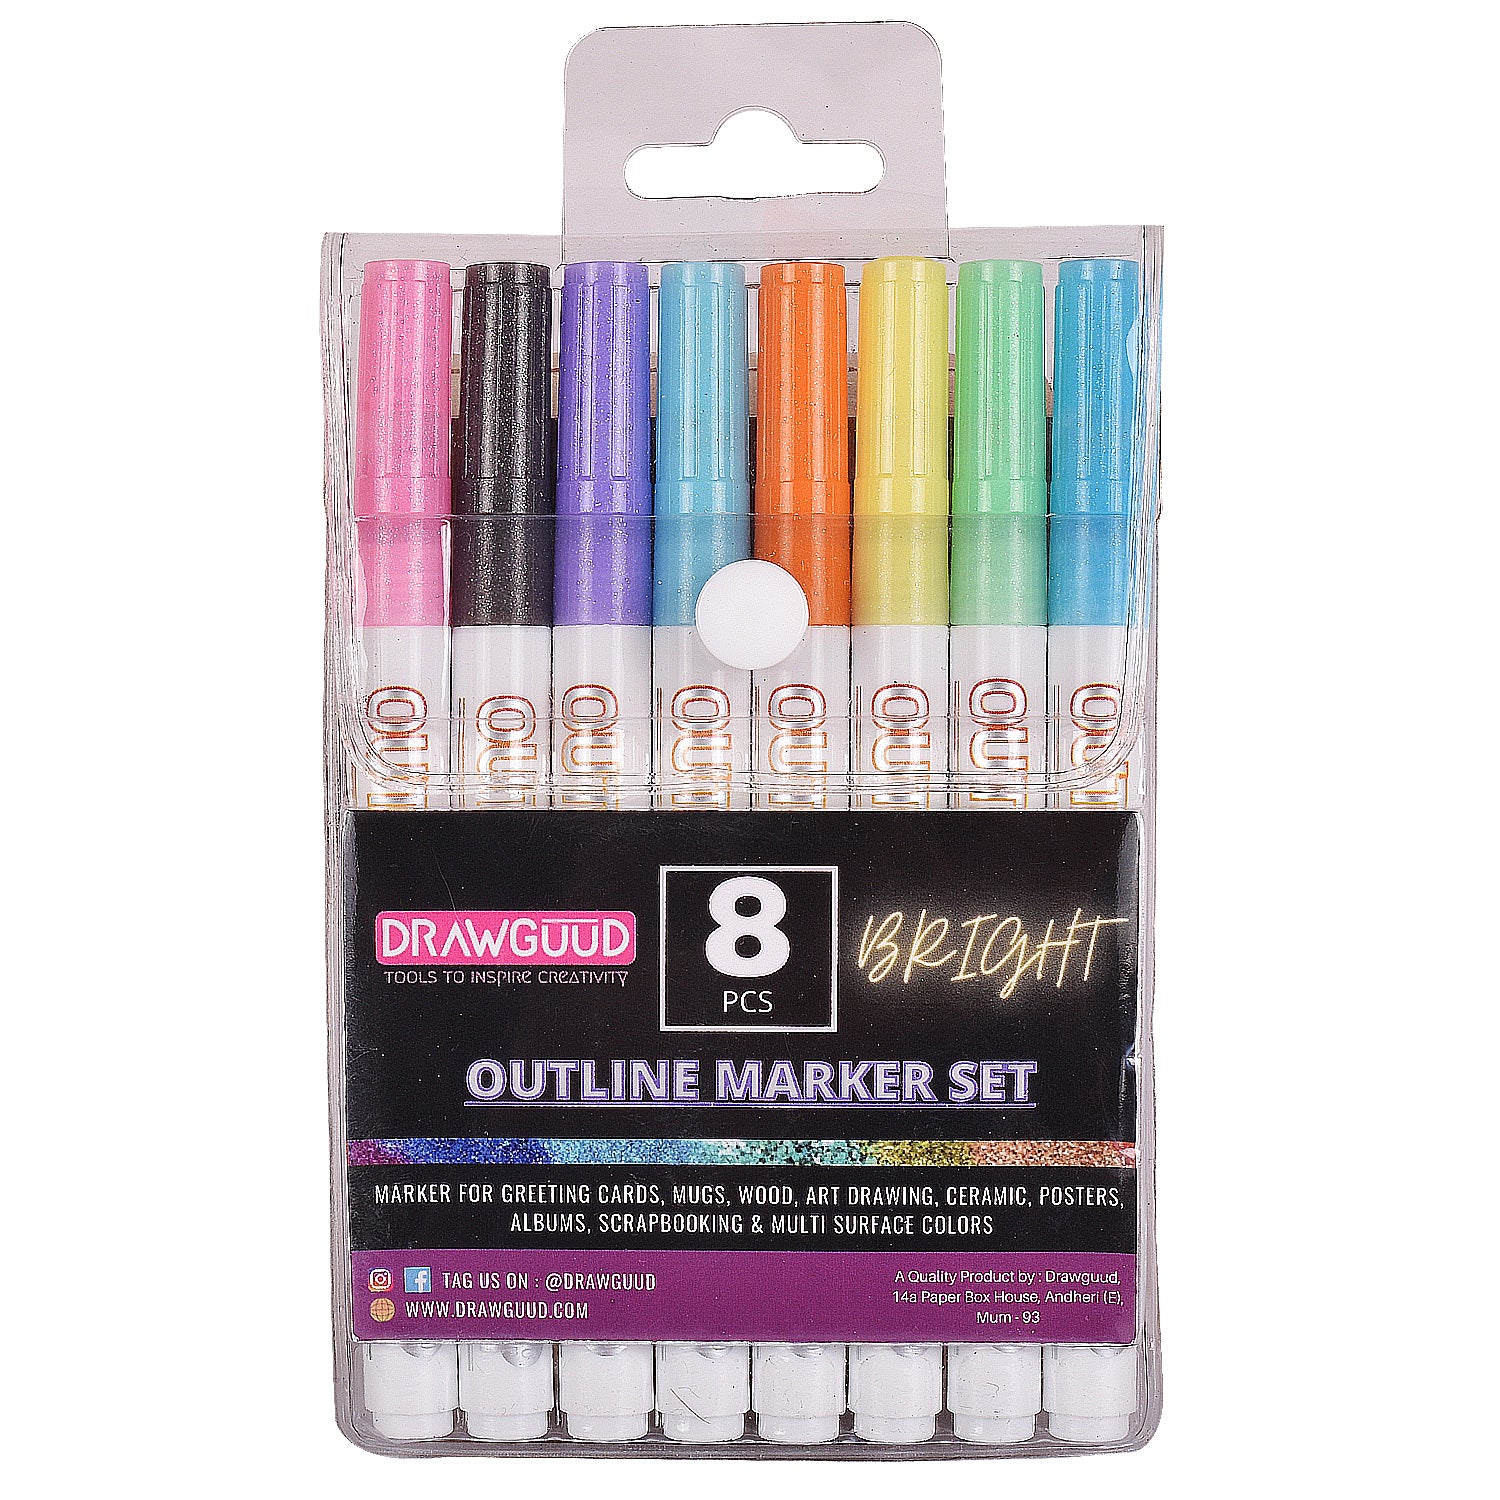 DRAWGUUD Set of 9 Black Micro-Pen Fineliner Ink Pens - Waterproof